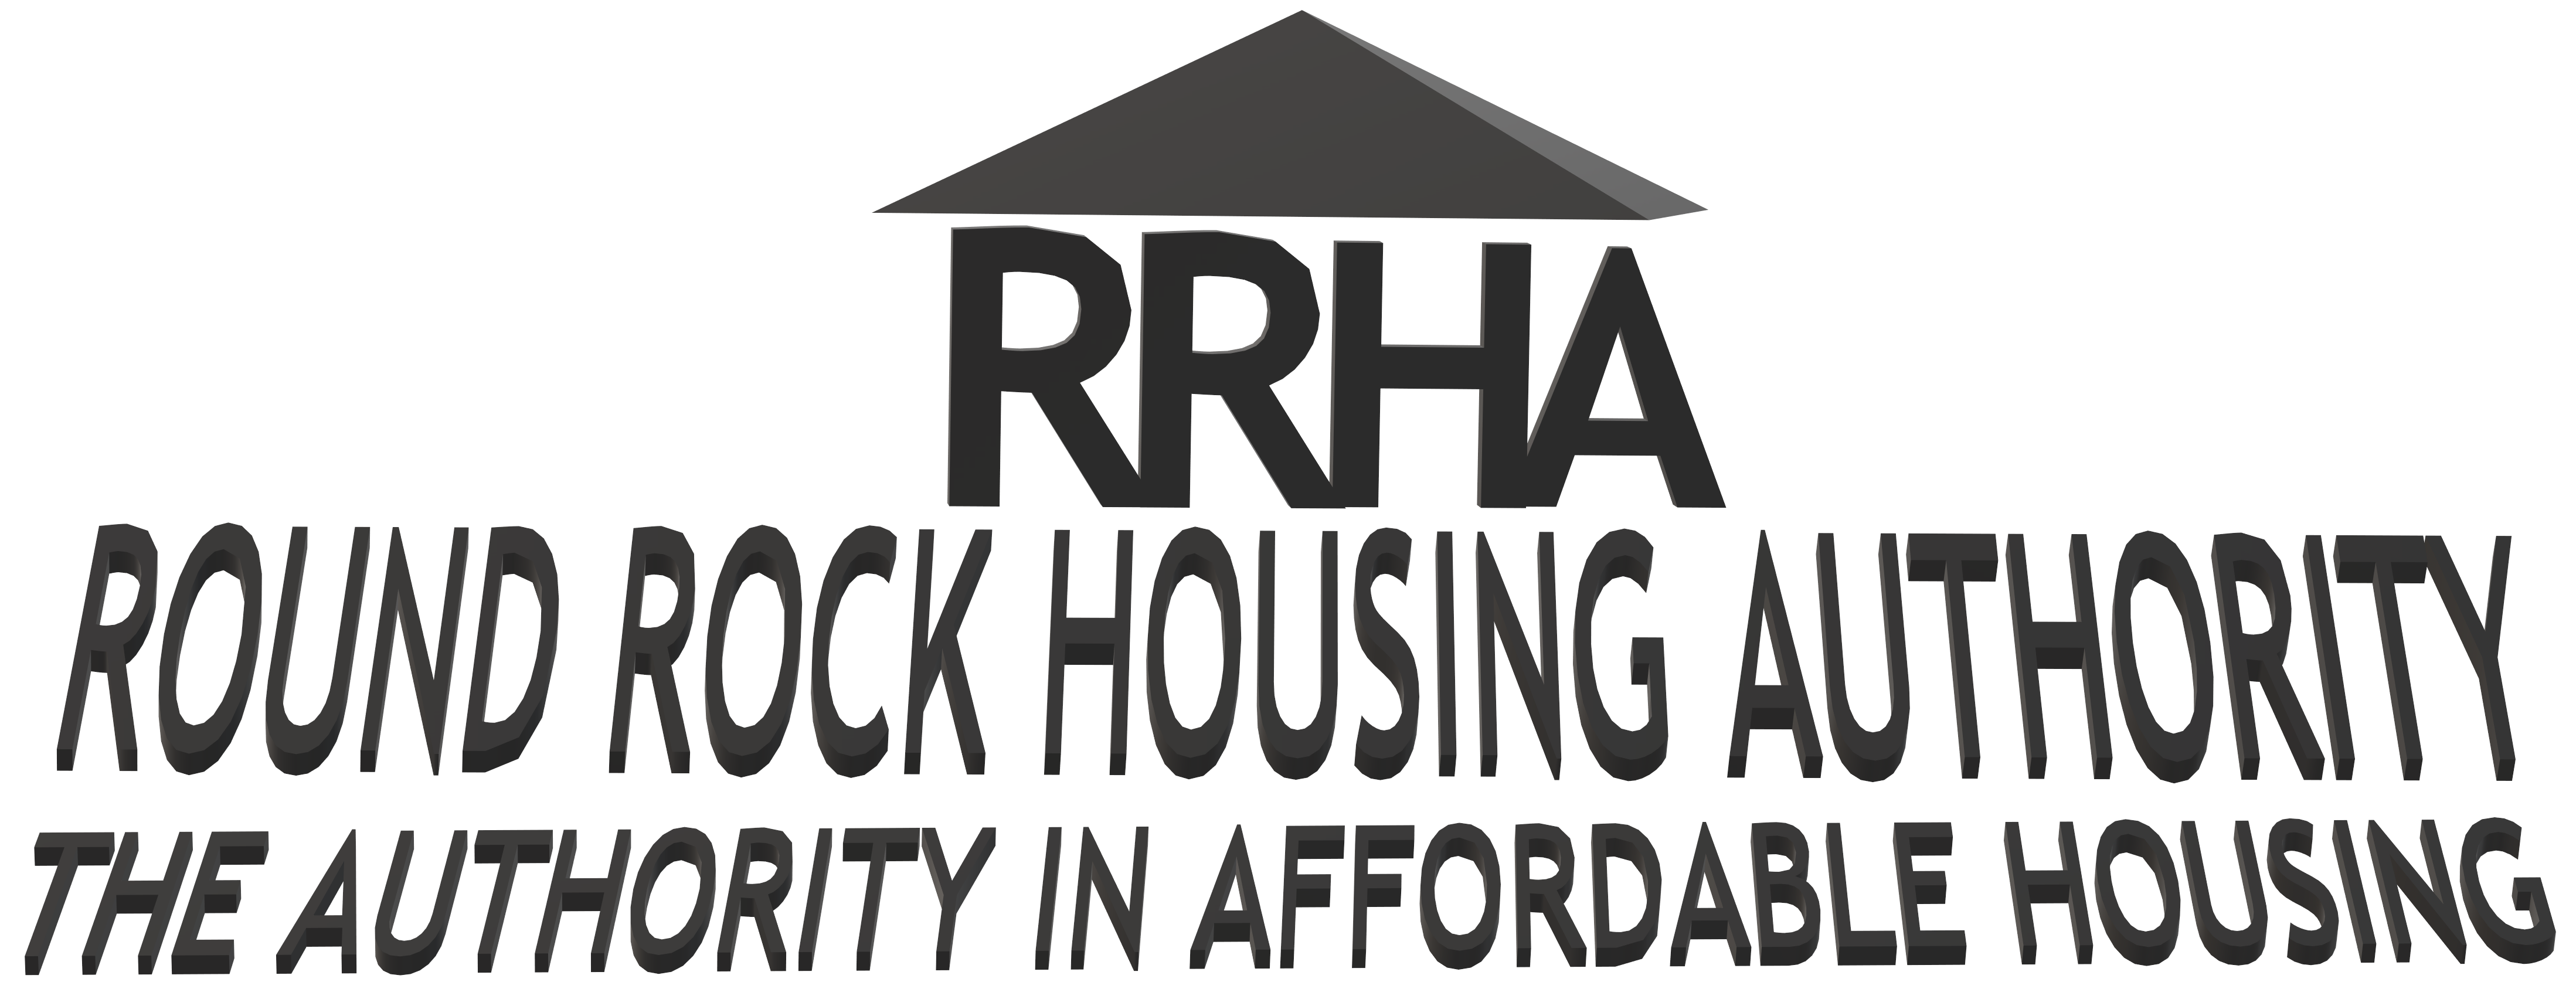 ROUND ROCK HOUSING AUTHORITY, TX logo